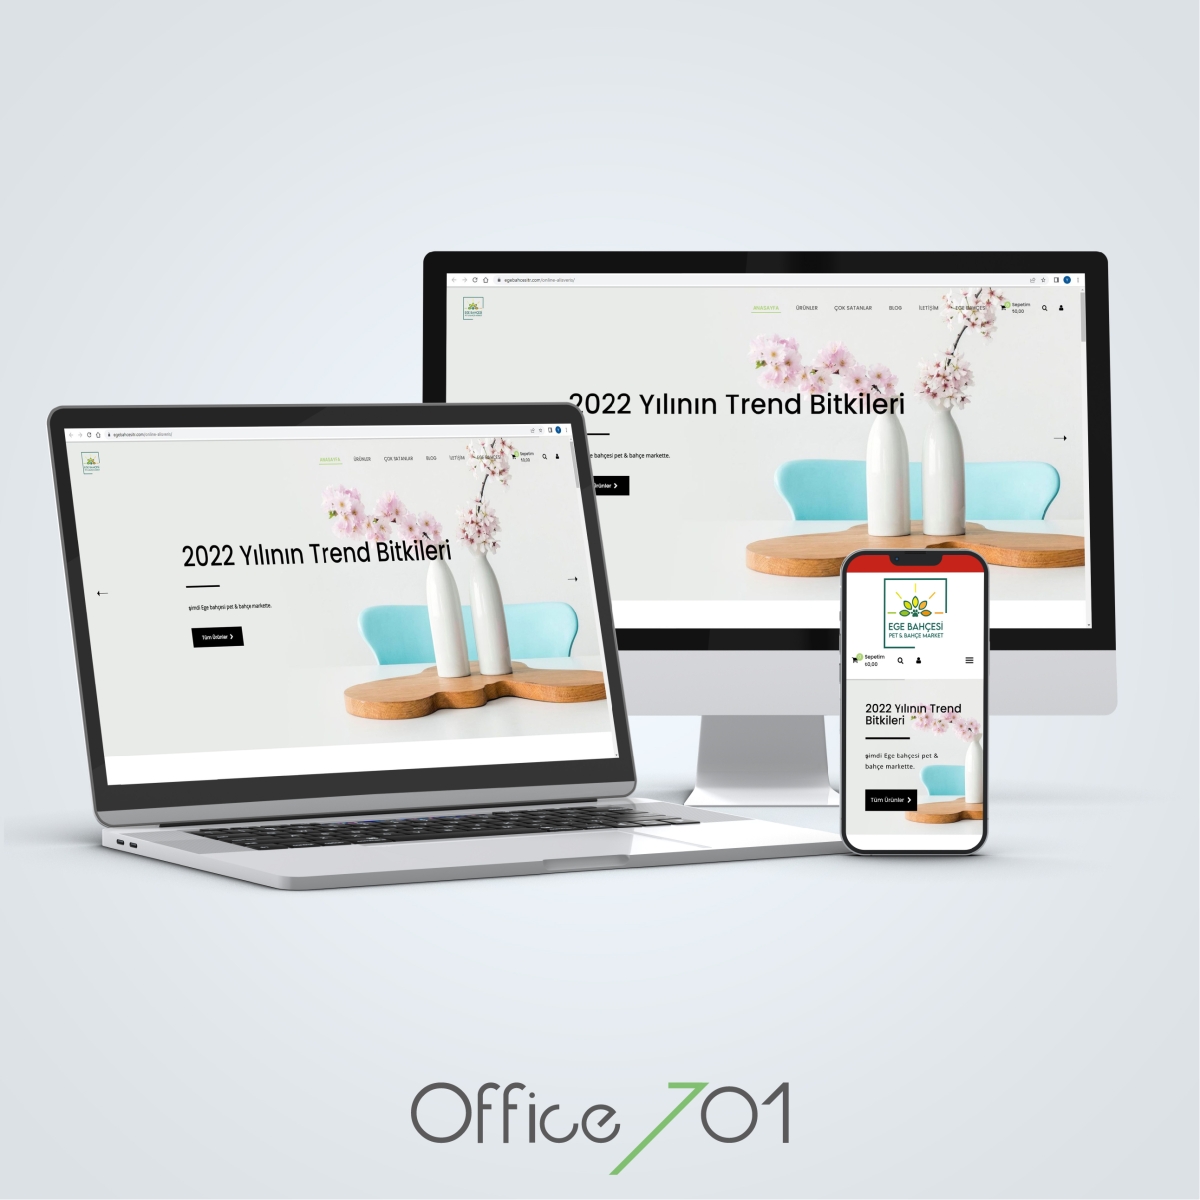 Office701 | Ege Bahçesi E-Ticaret